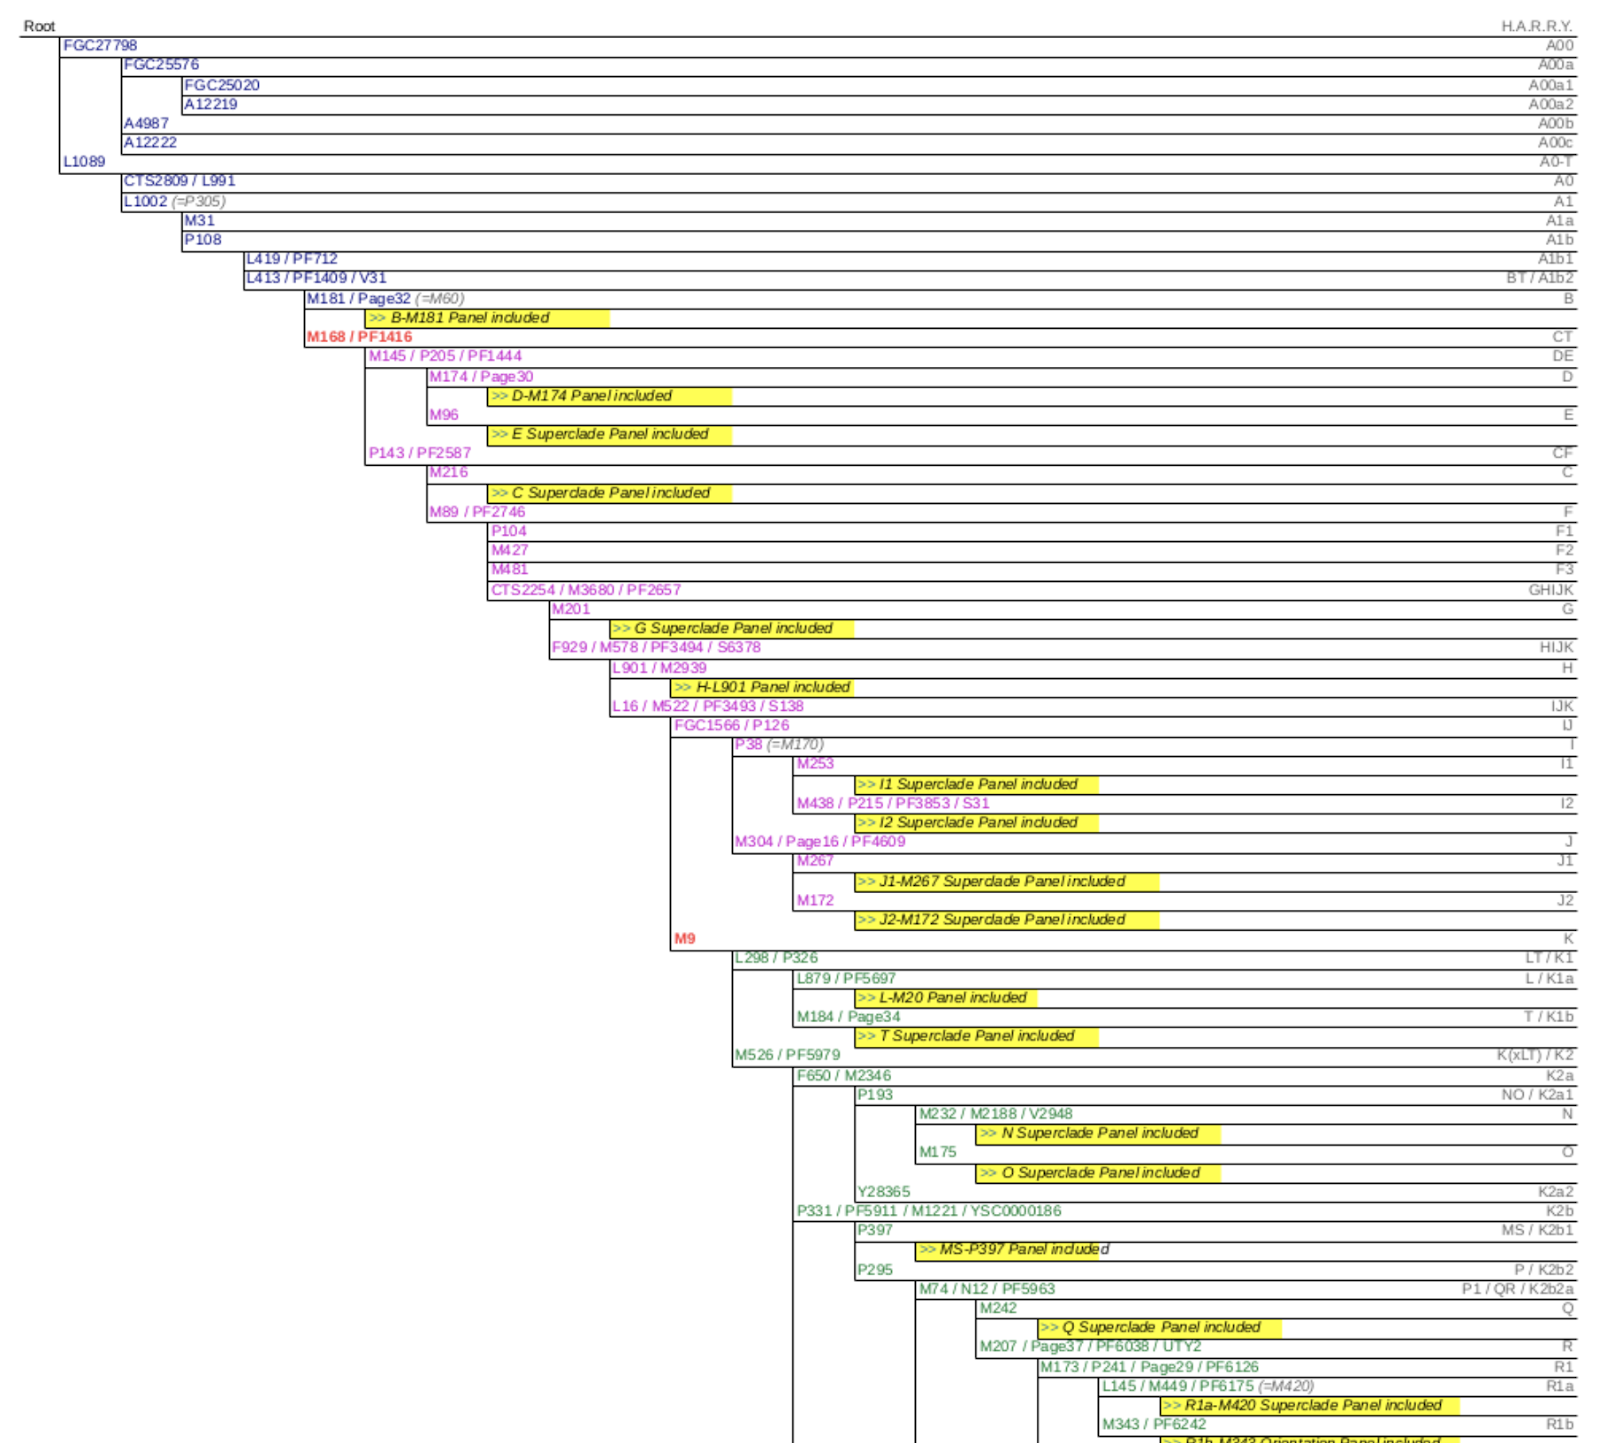 YSEQ Y chromosome haplogroup tree